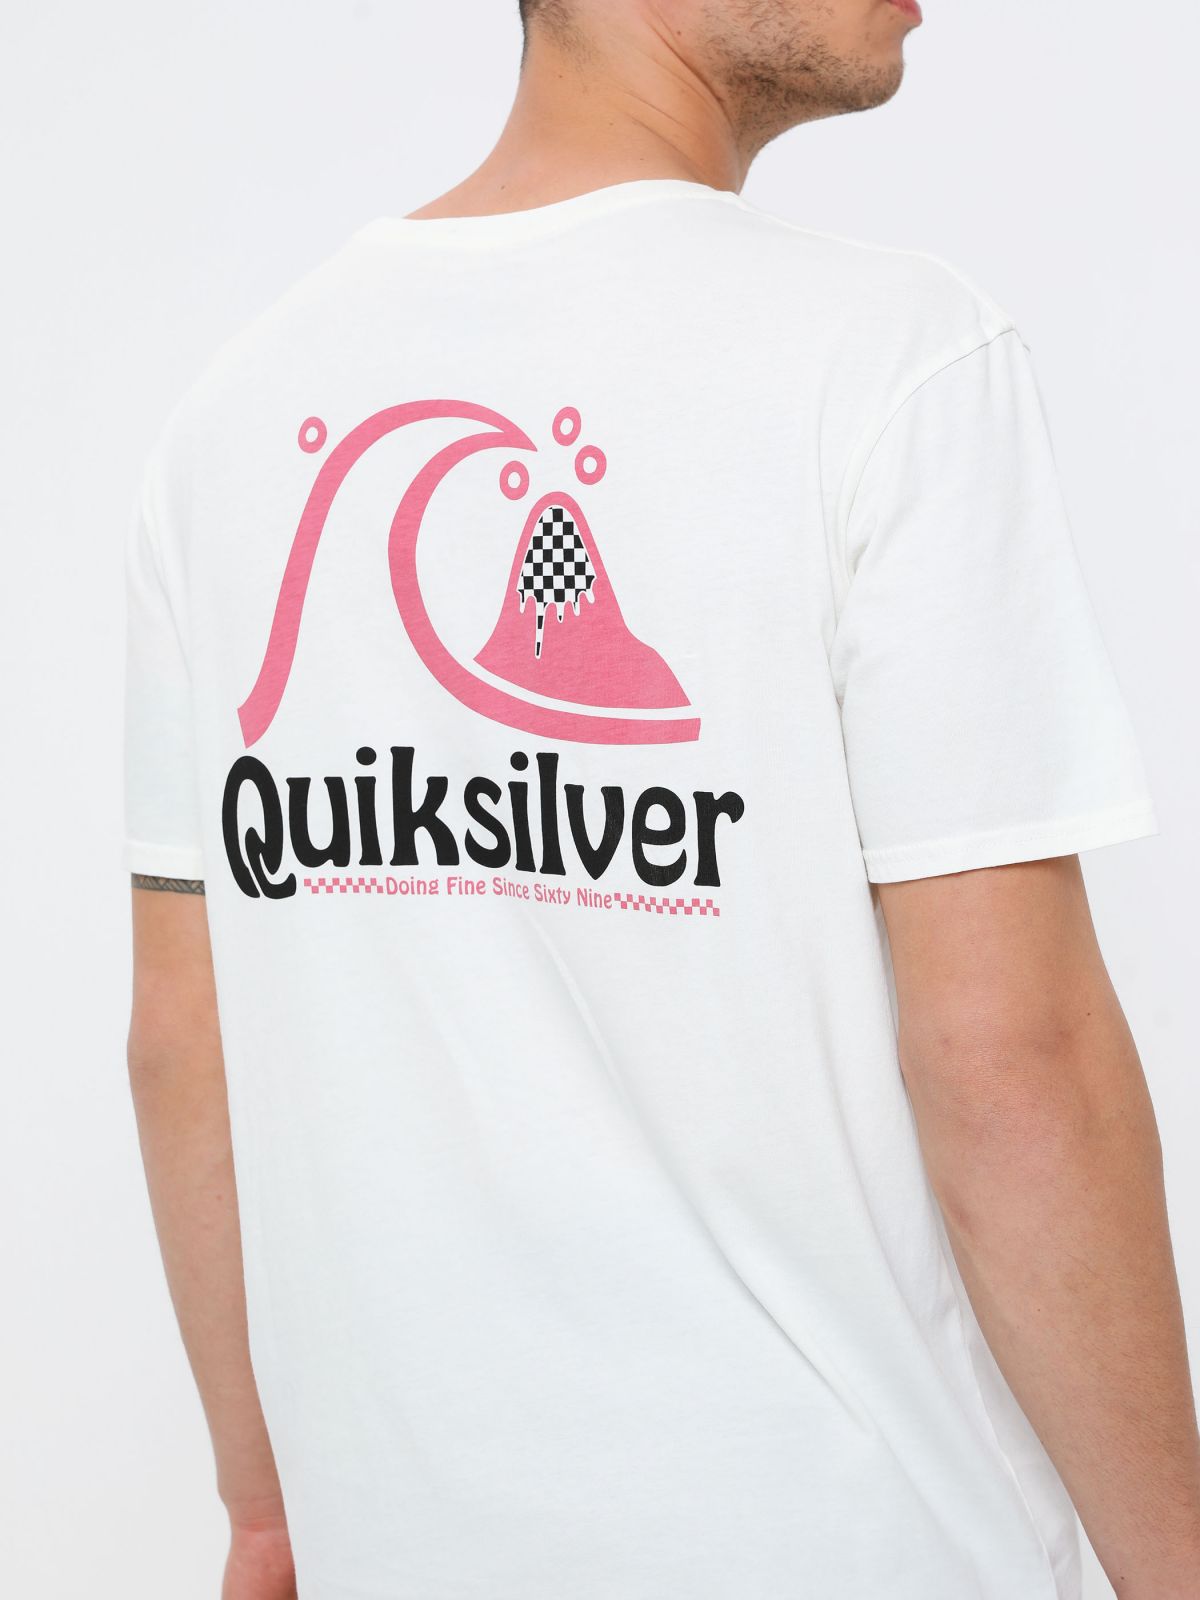  טי שירט ווש עם הדפס לוגו של QUIKSILVER